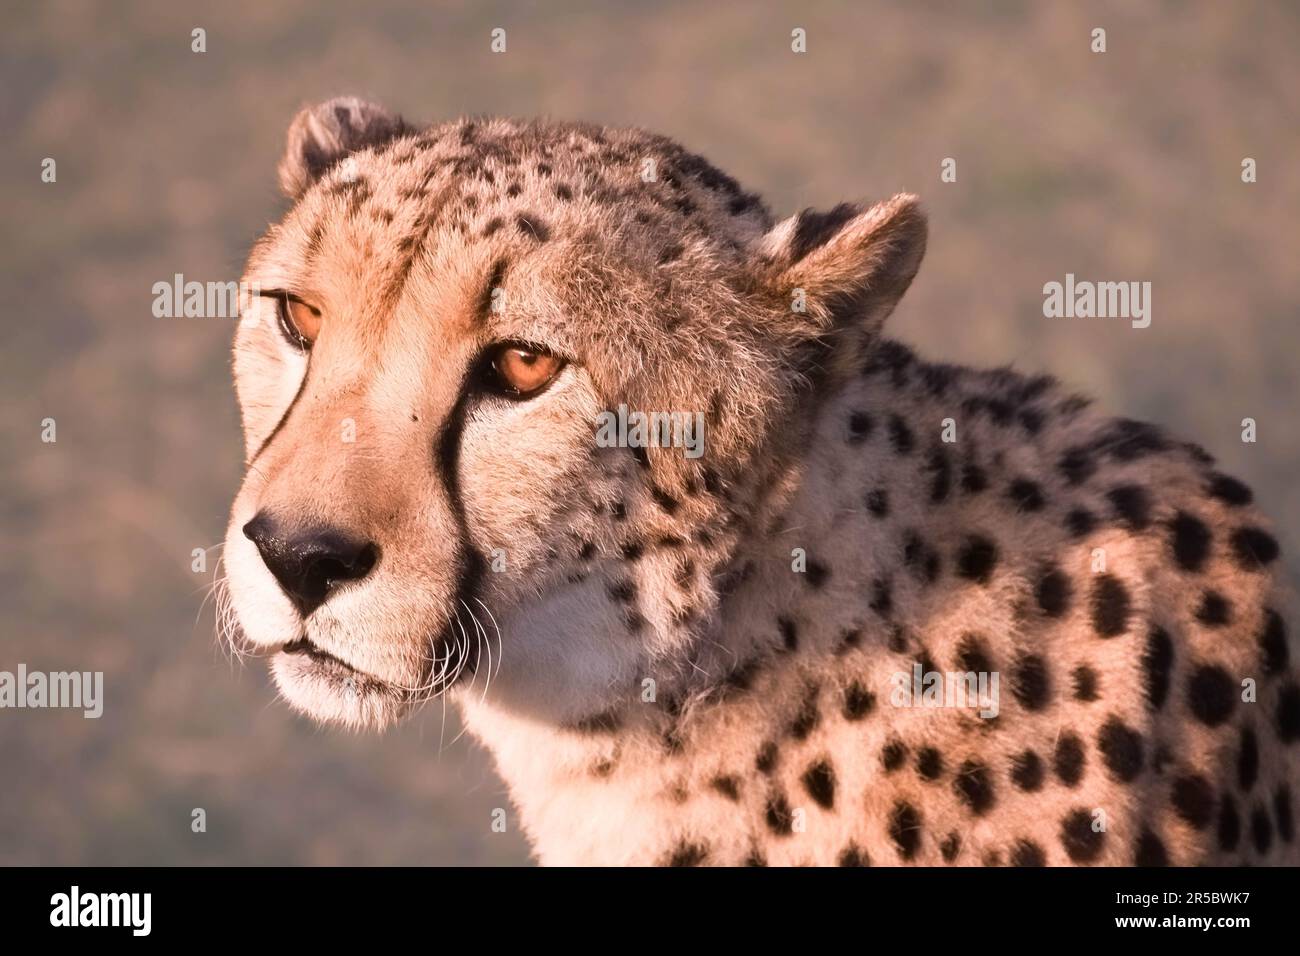 Nahaufnahme des seitlichen Profils von Kopf und Hals eines Geparden, das sein Fell und seine auffälligen Ohren zeigt Stockfoto